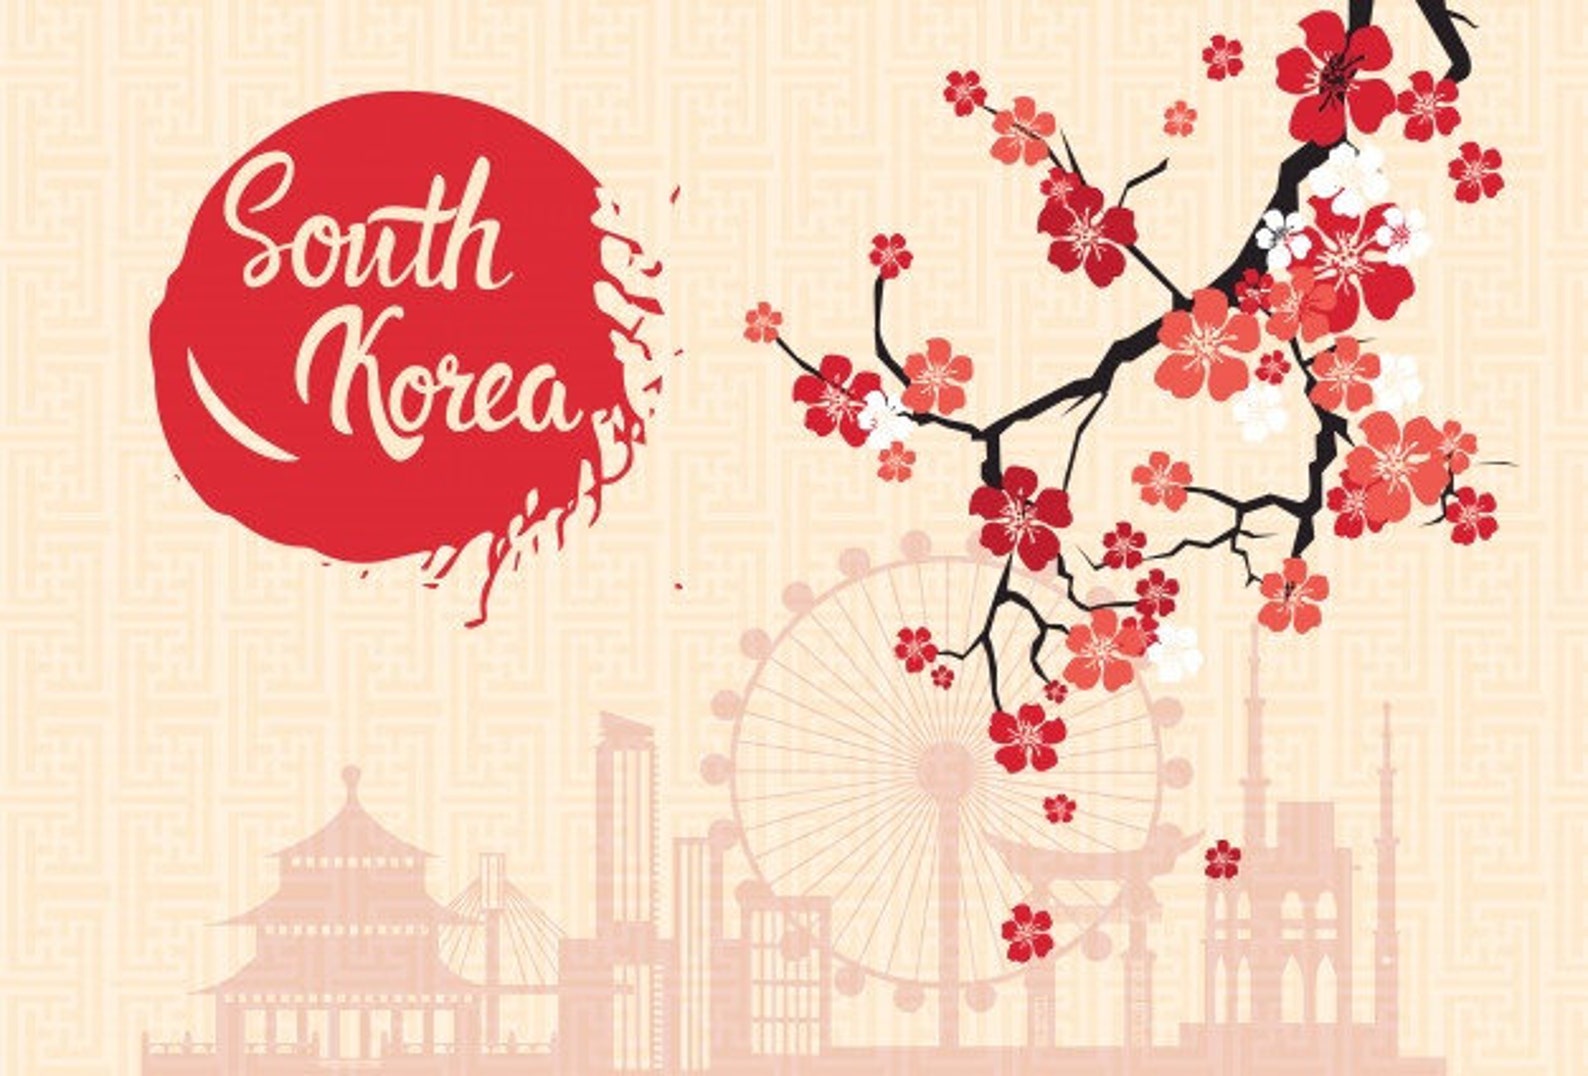 Постеры о Южной Корее